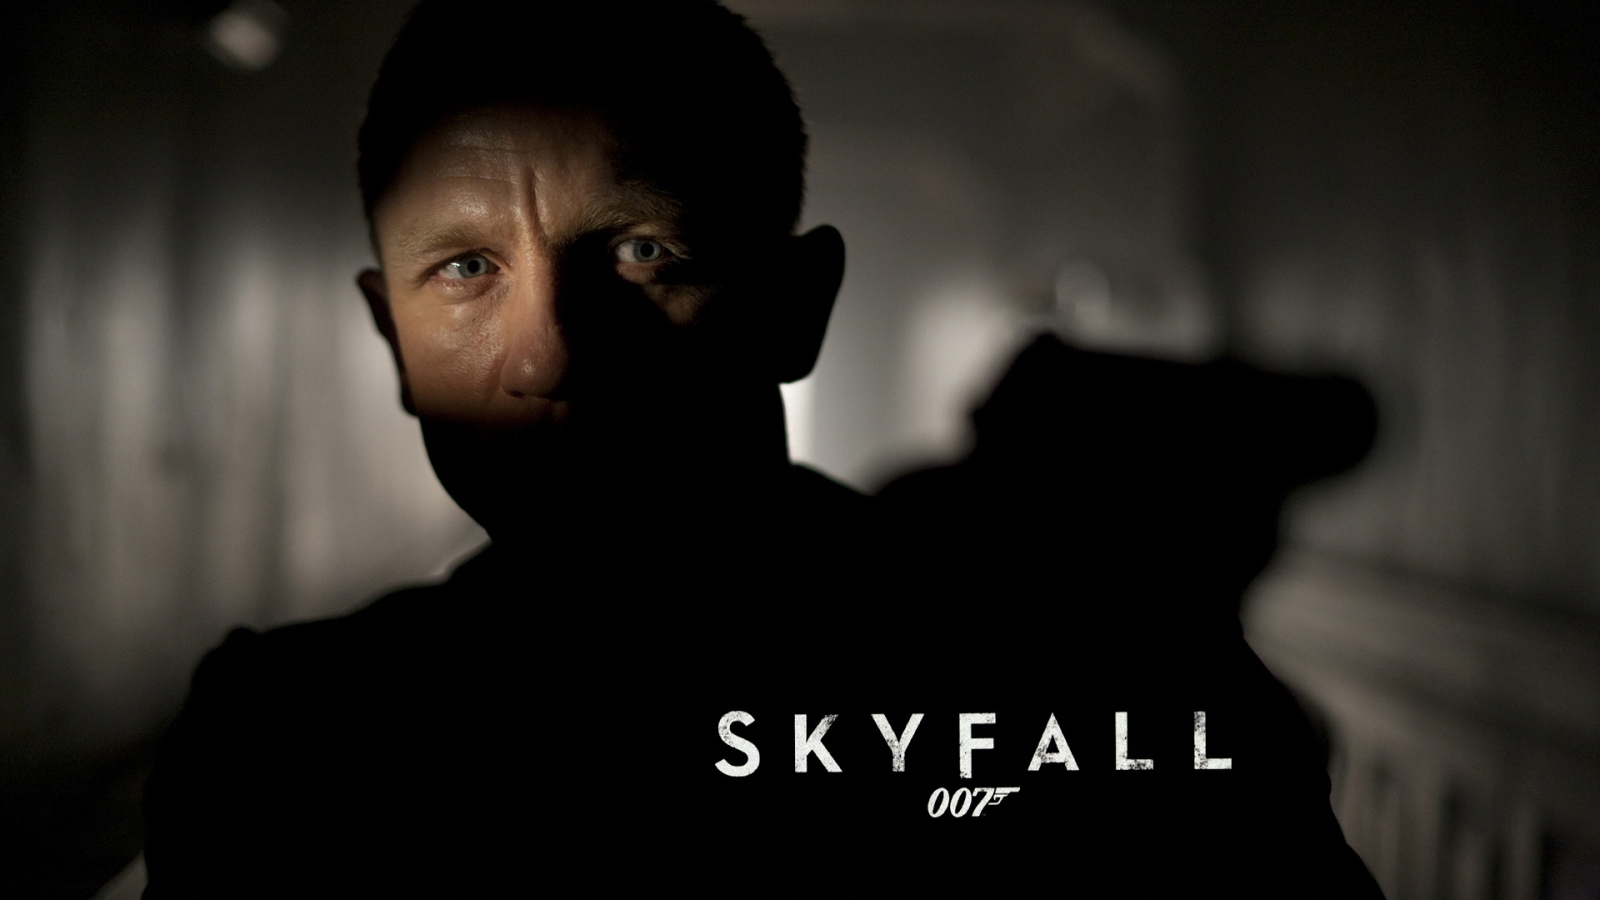 Skyfall 007 for 1600 x 900 HDTV resolution